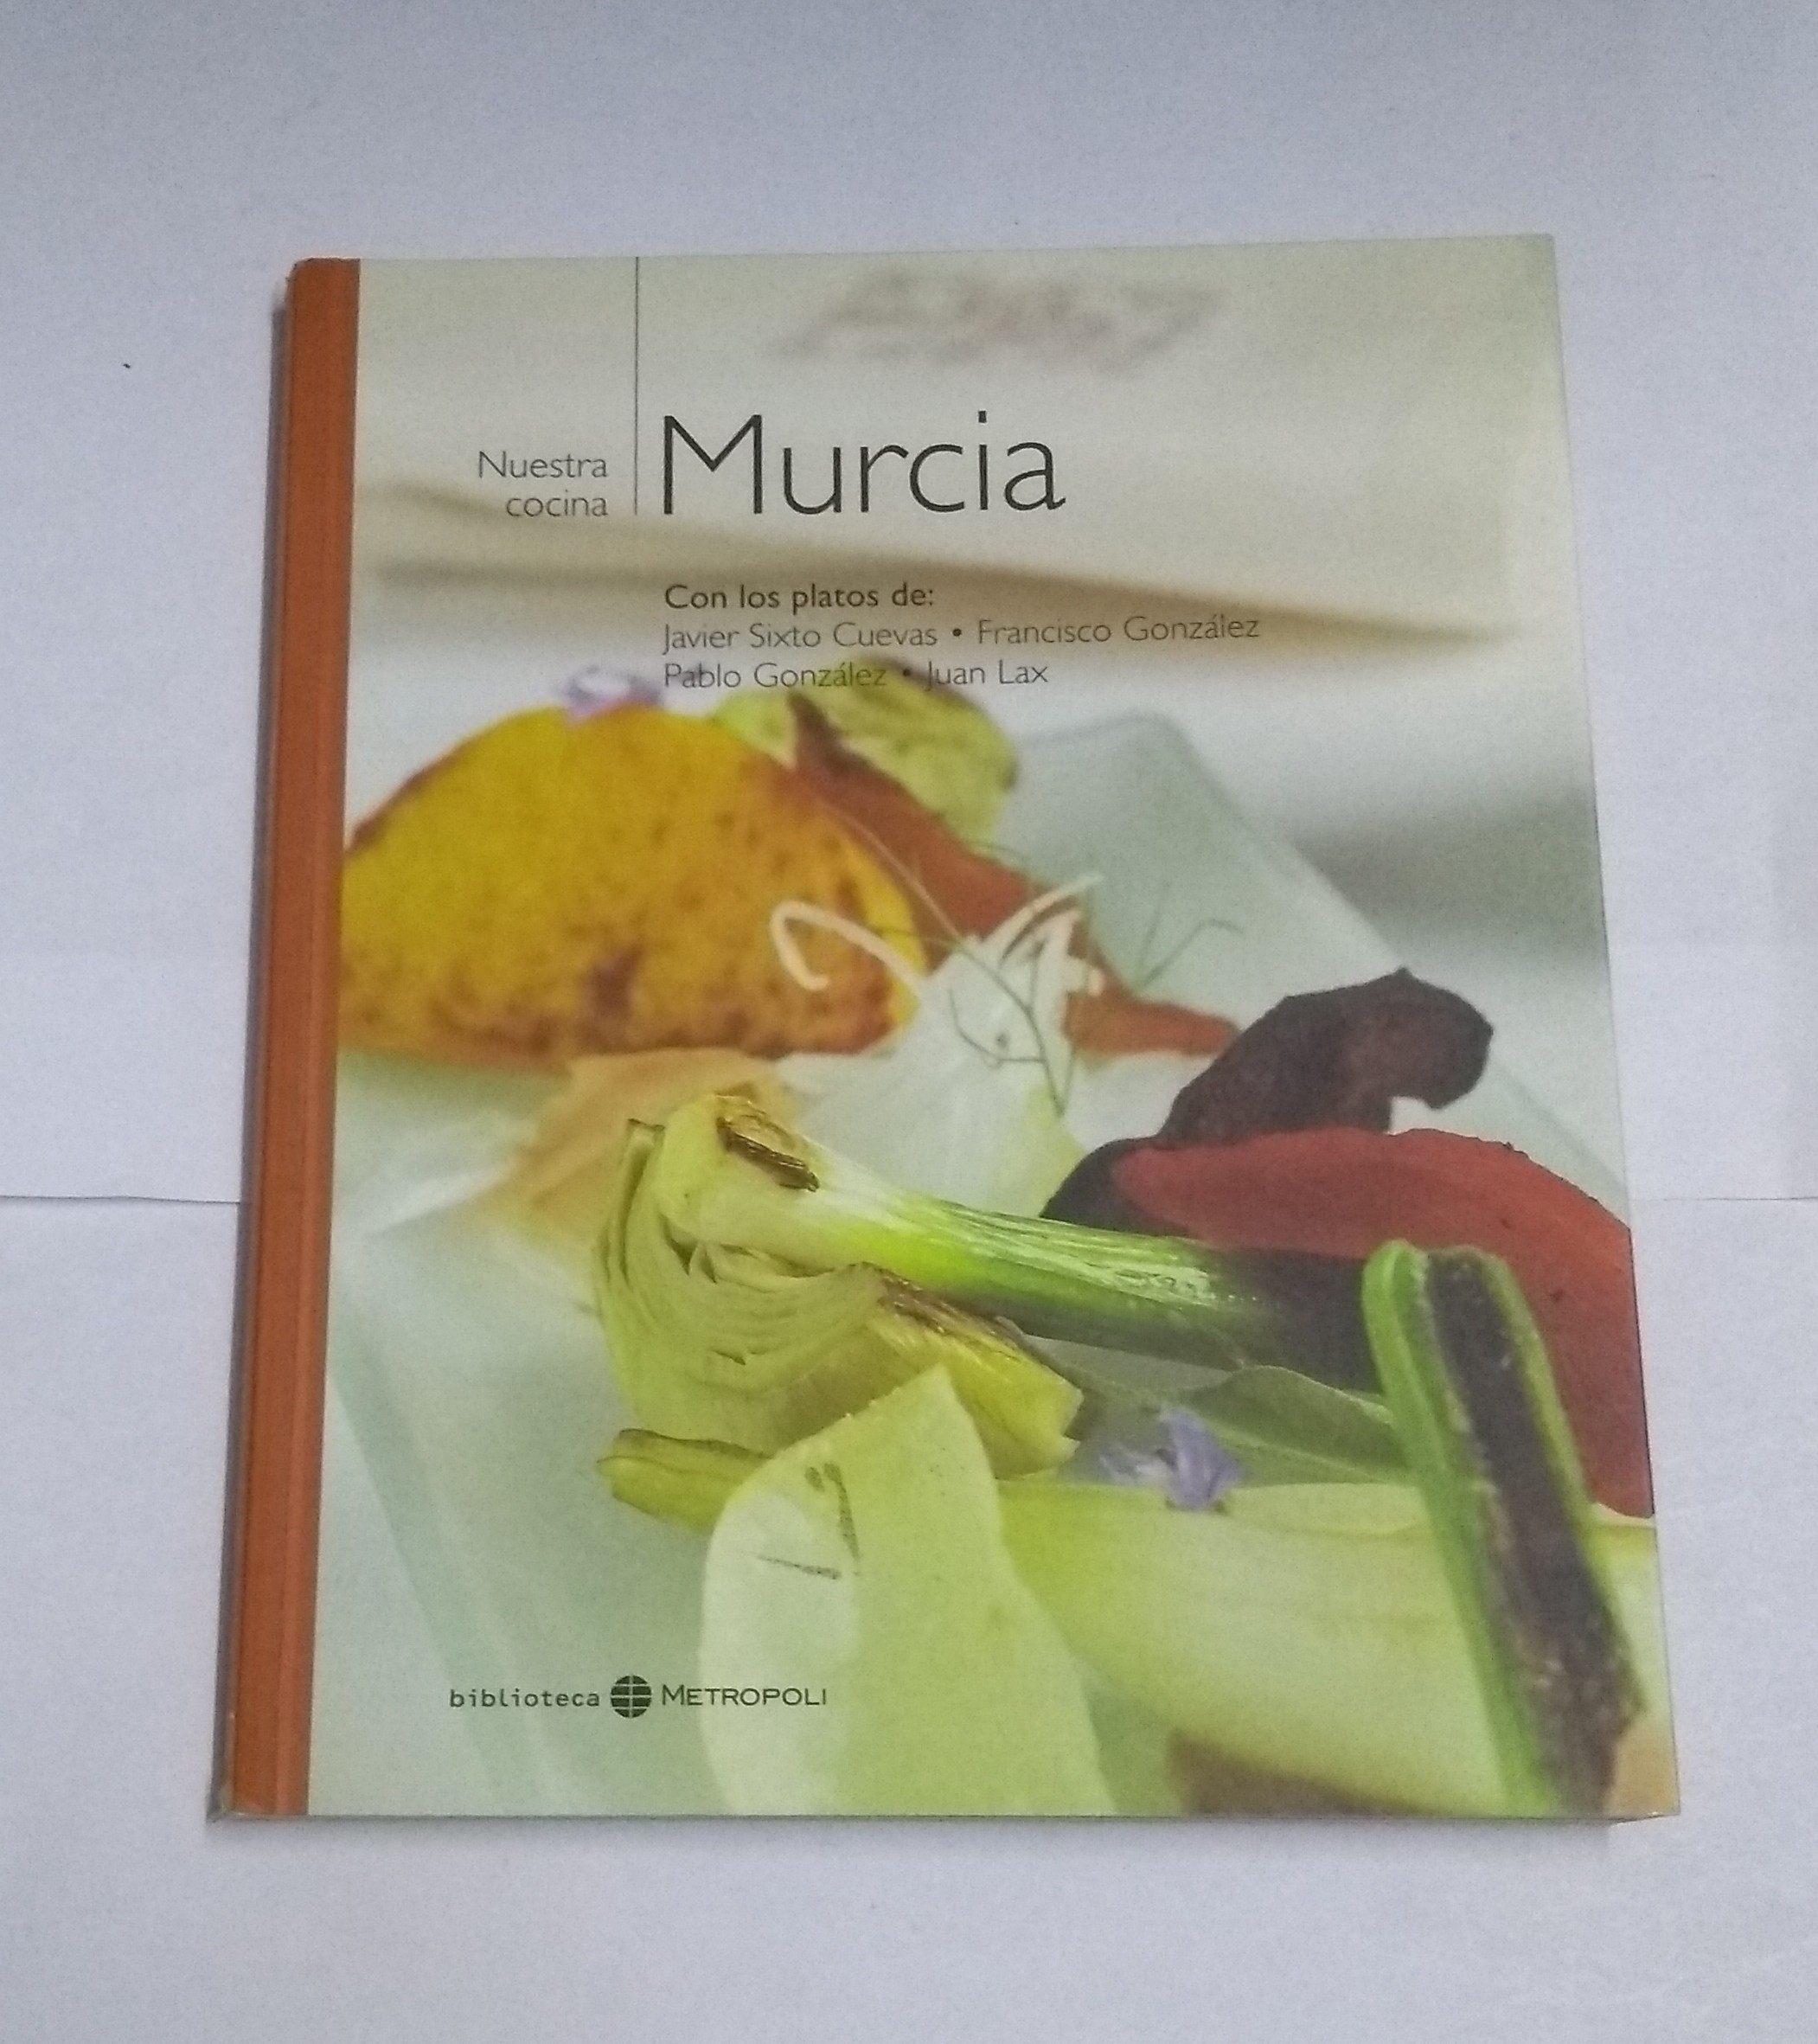 Nuestra cocina: Murcia